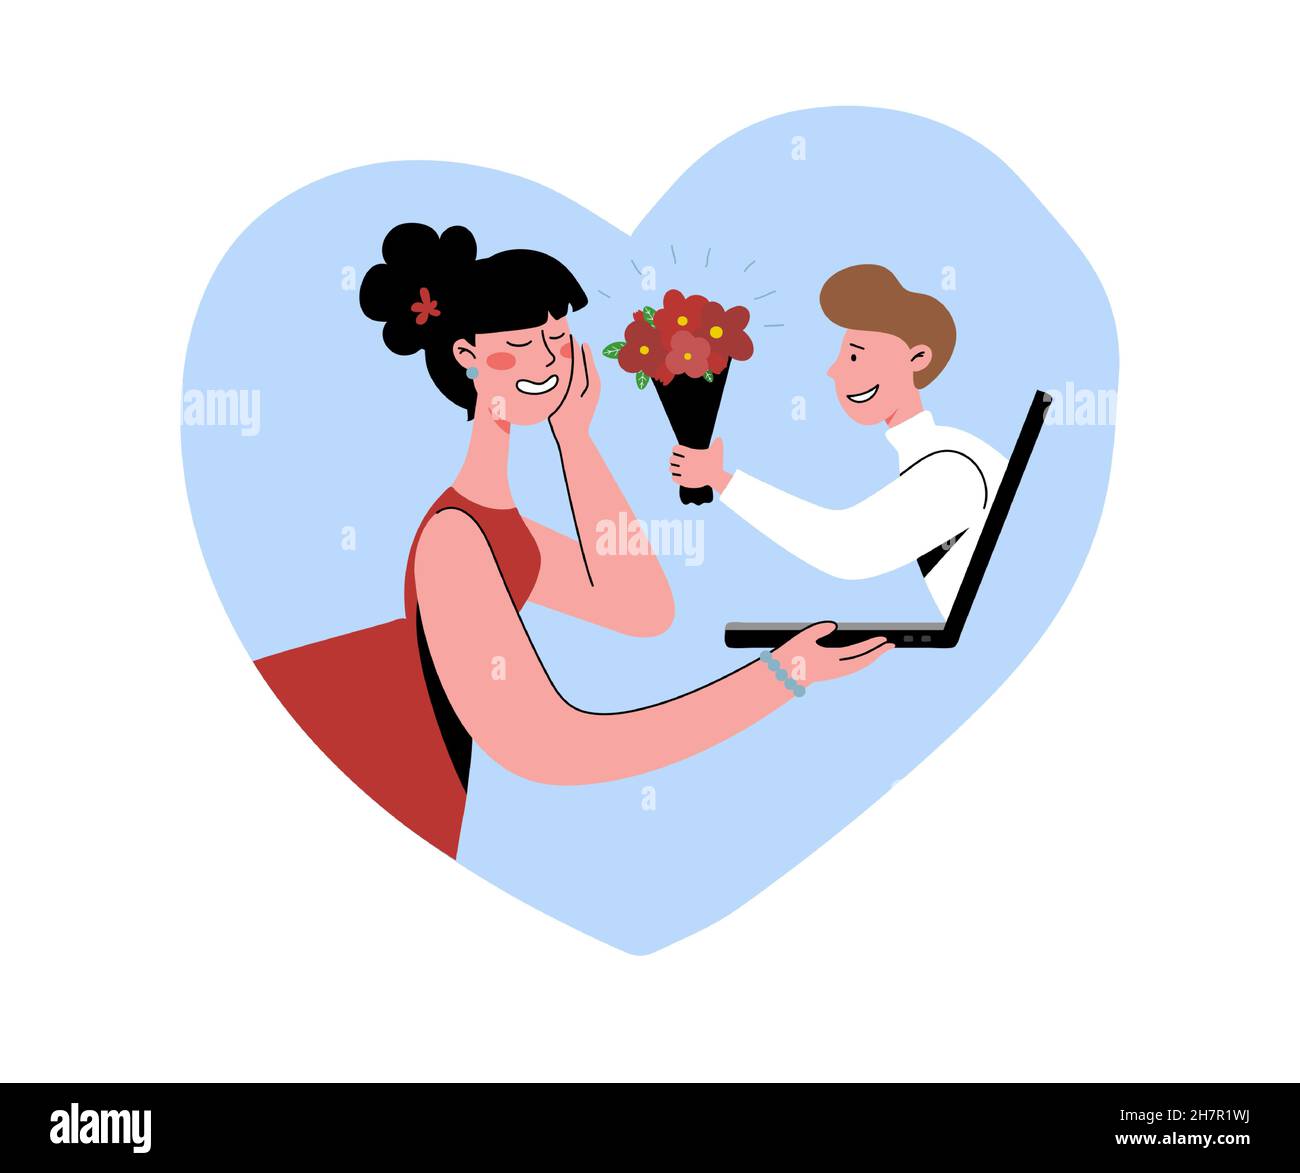 Un uomo confessa il suo amore ad una donna. Sito di incontri, due singole persone hanno trovato vero amore attraverso Internet. Illustrazione piatta vettoriale. Illustrazione Vettoriale